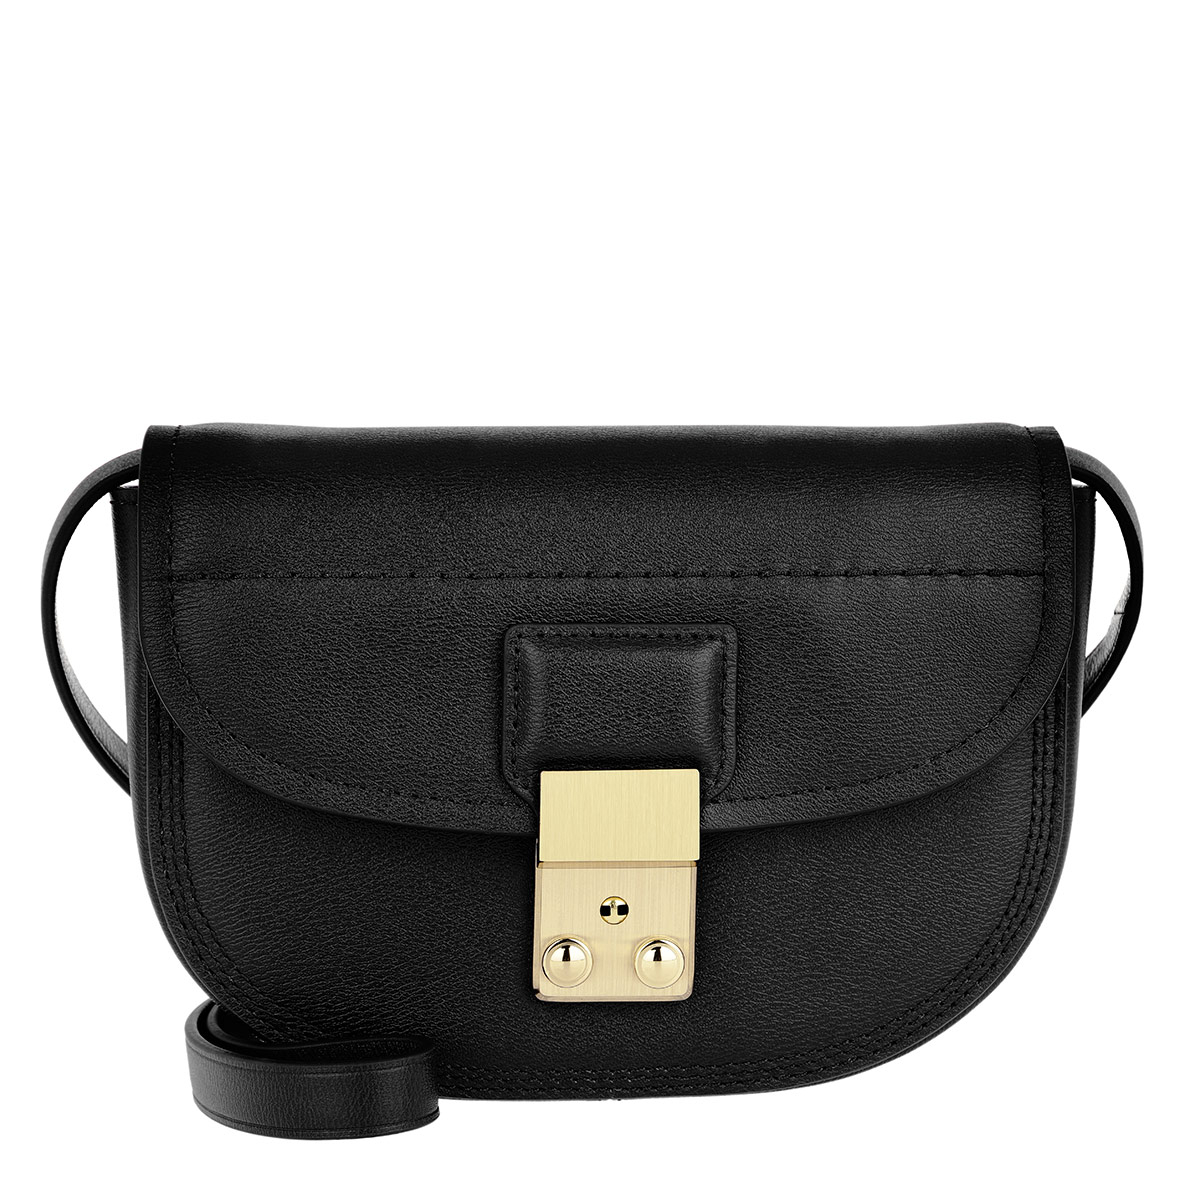 3.1 Phillip Lim Umhängetasche - Pashli Mini Saddle Belt Bag Black - in schwarz - für Damen